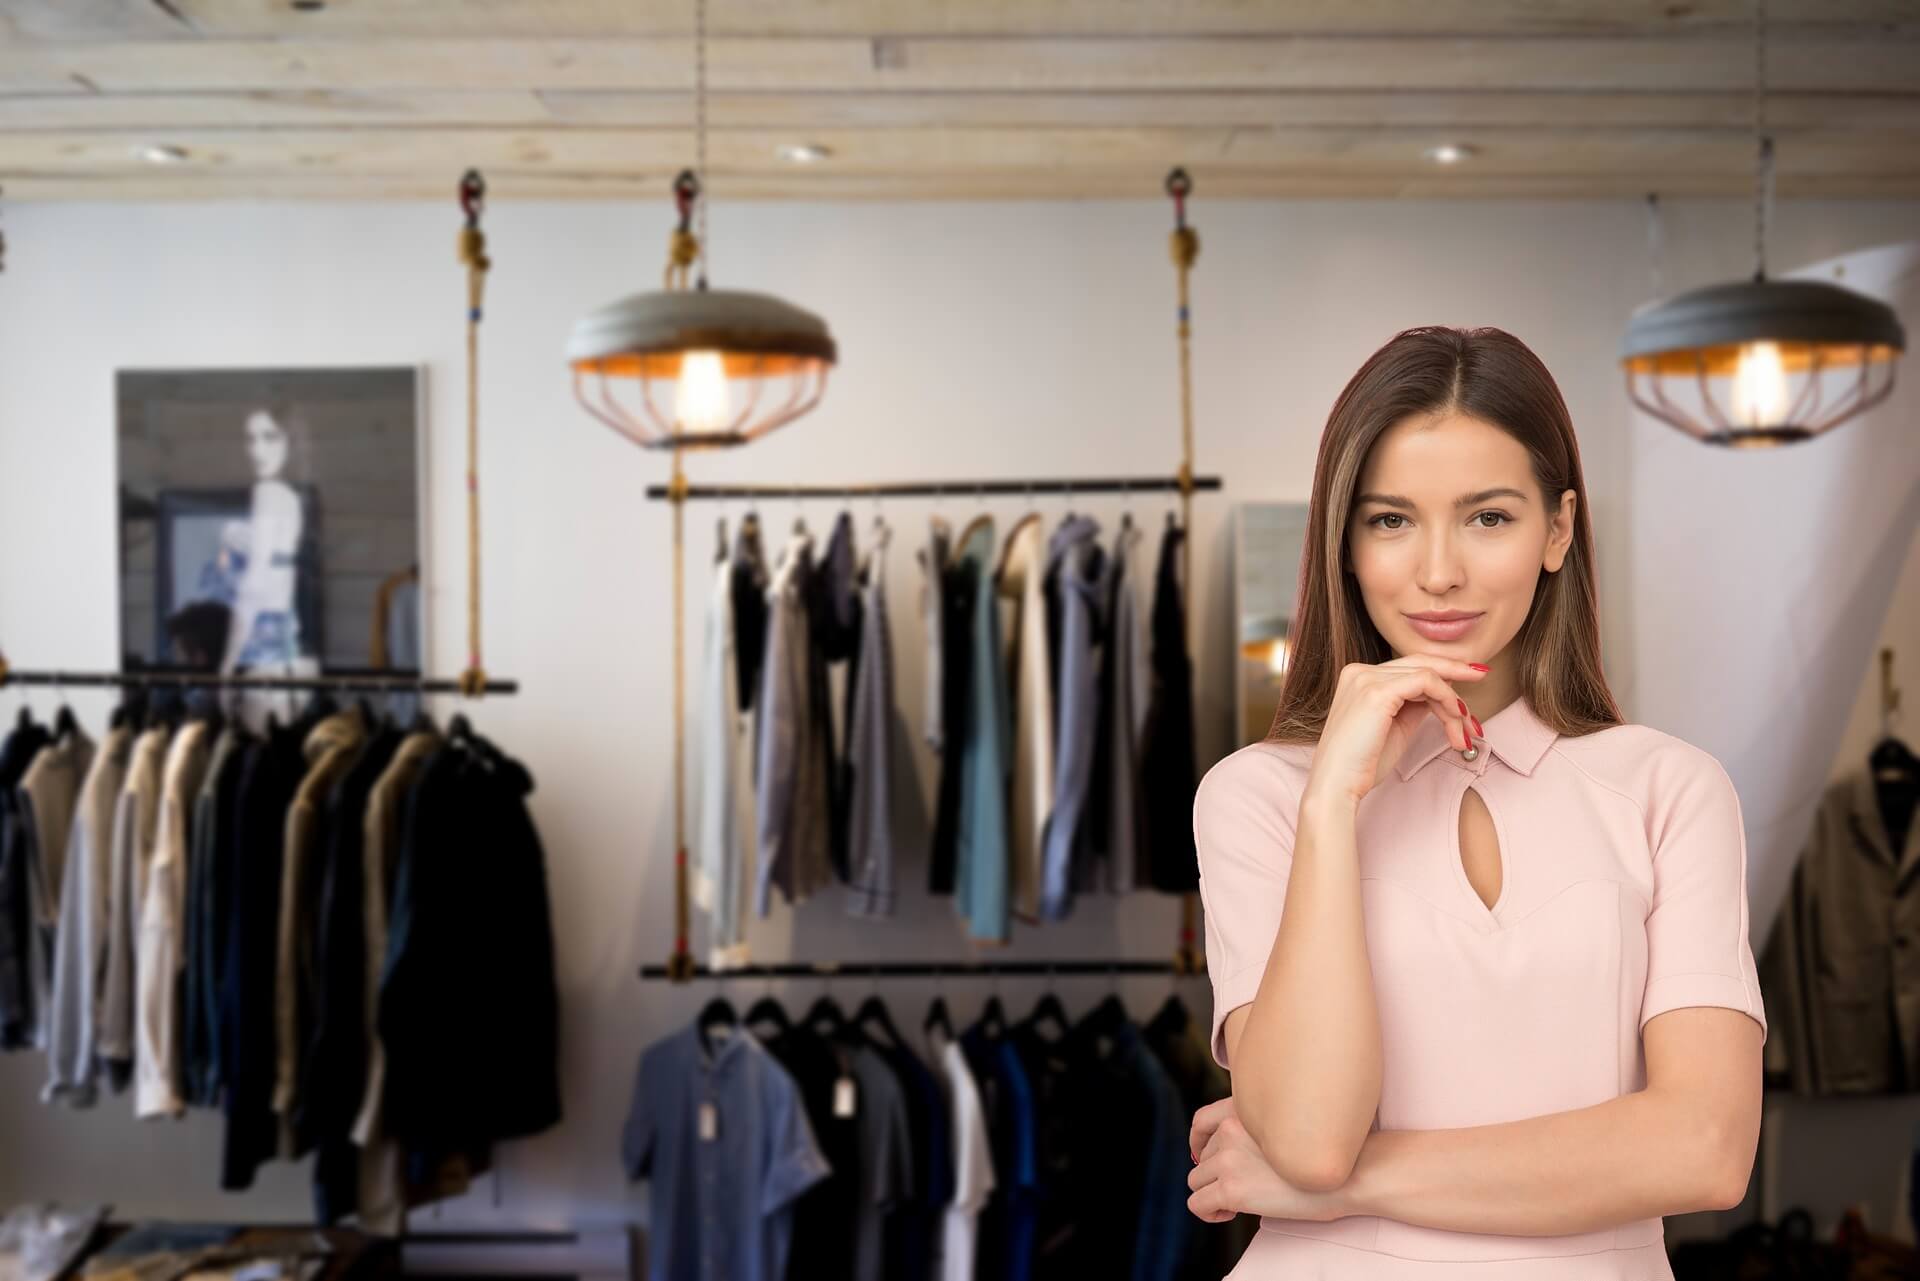 Como abrir uma empresa 1 - imagem de uma mulher branca, usando uma blusa rosa, à frente de uma loja com gôndolas com roupas masculinas